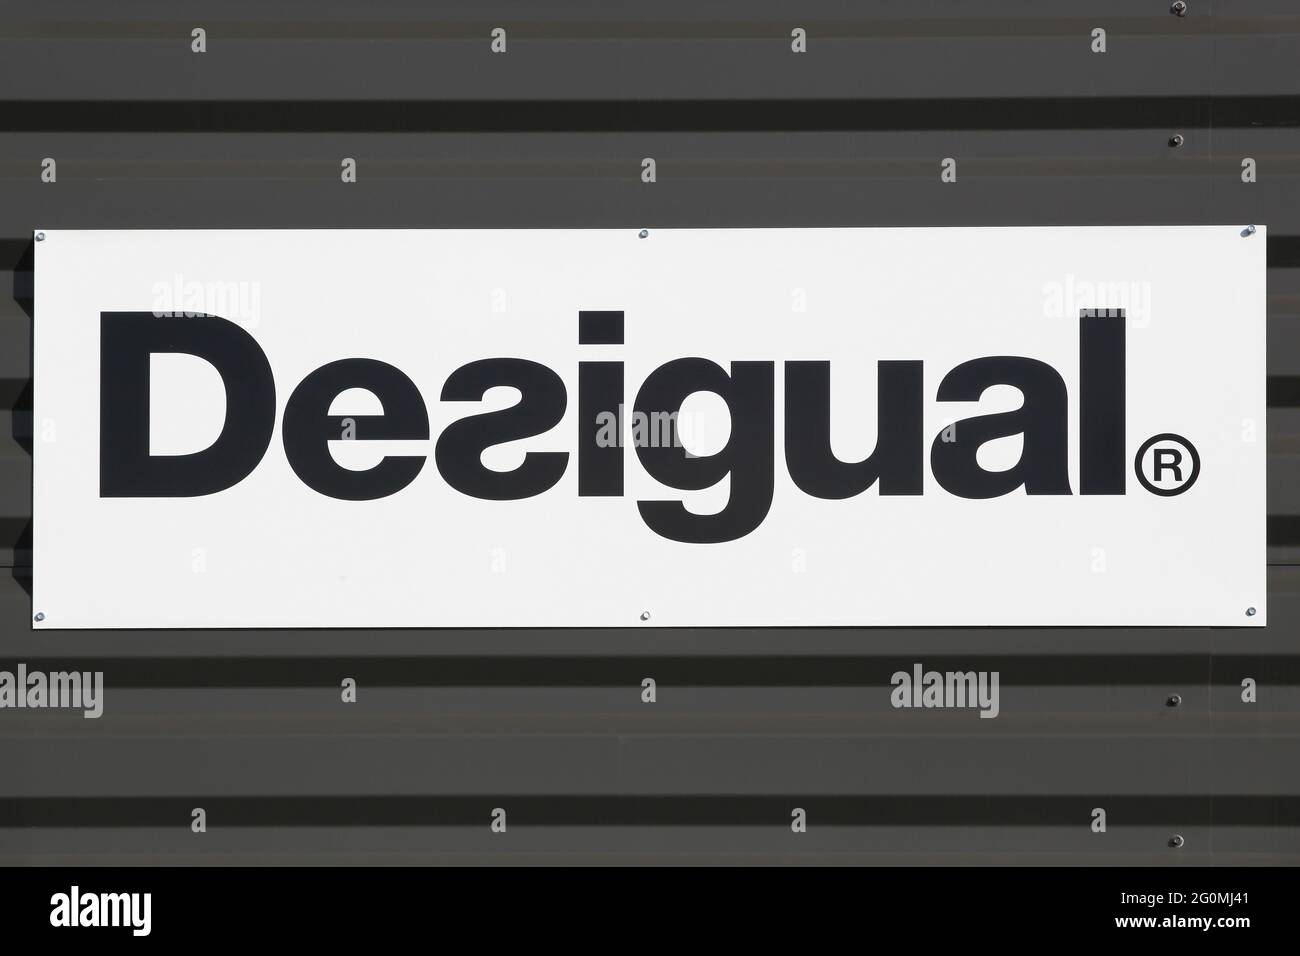 Macon, France - 15 mars 2020 : logo Desigual sur un mur d'un magasin. Desigual est une marque de vêtements dont le siège social est situé à Barcelone, en Catalogne, en Espagne Banque D'Images